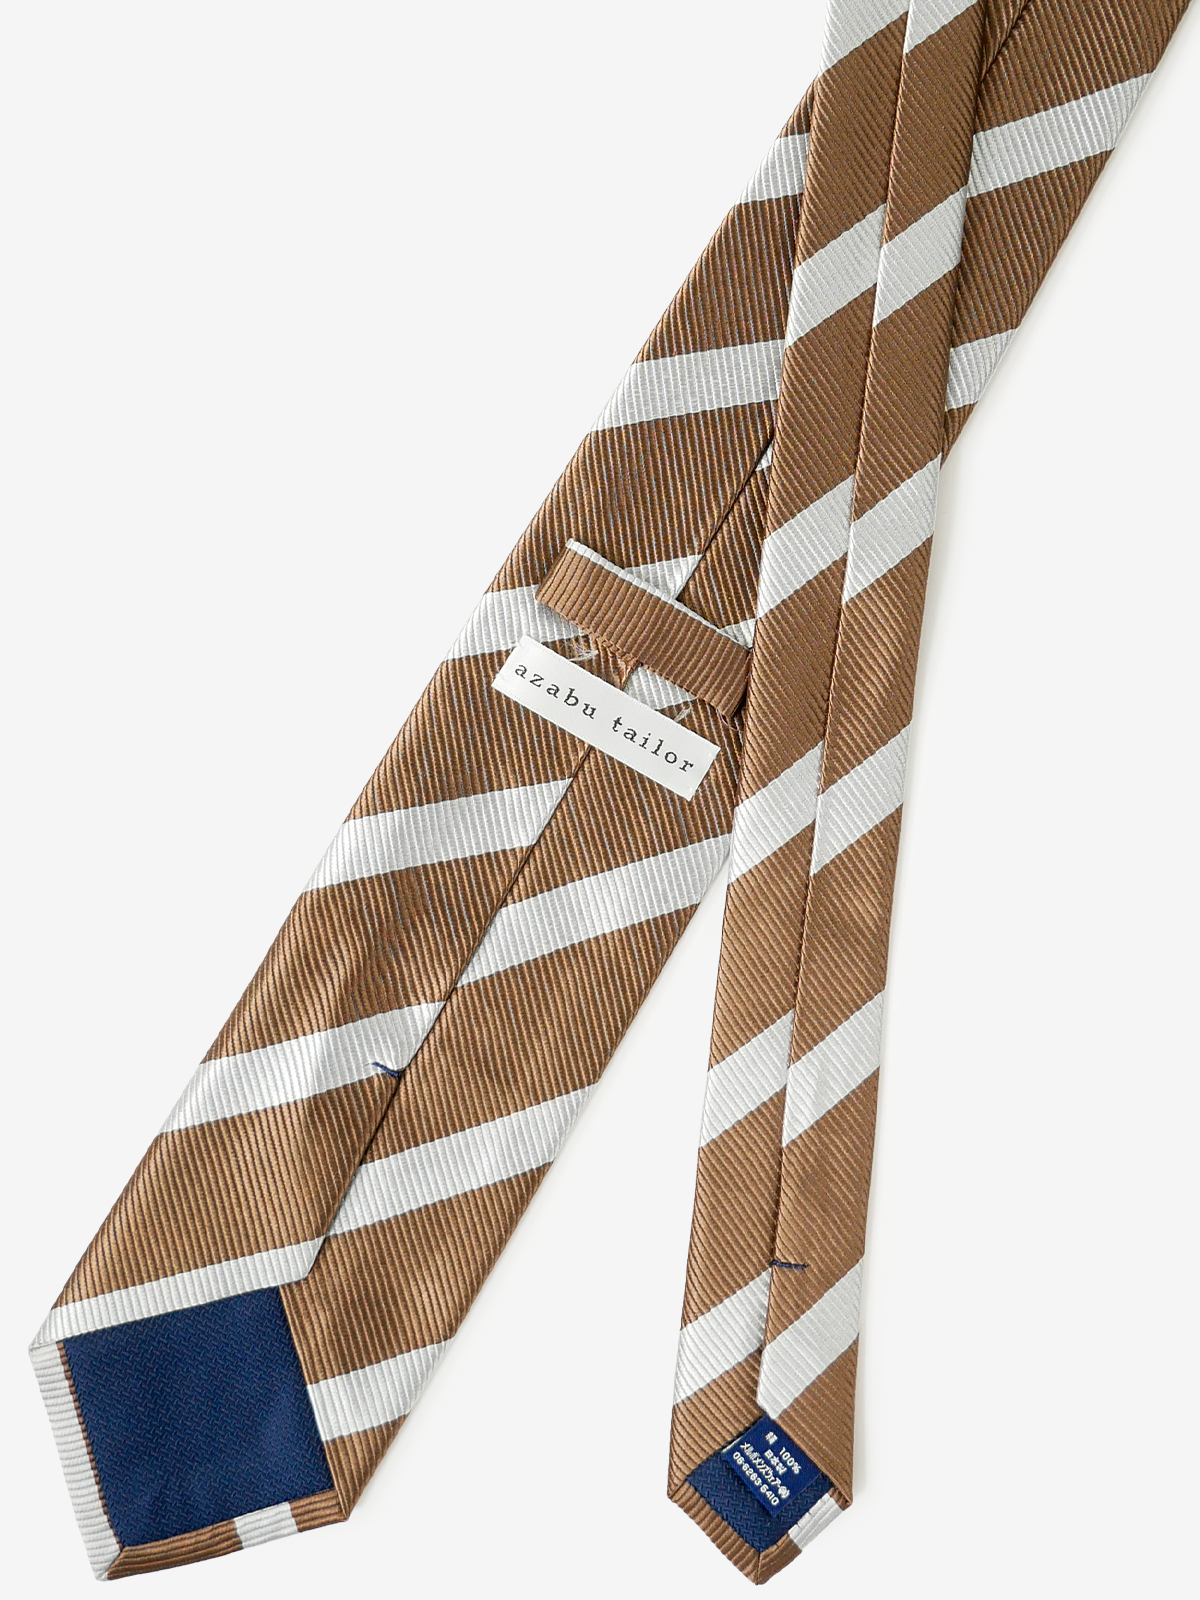 Repp Stripe Tie｜ライトブラウン